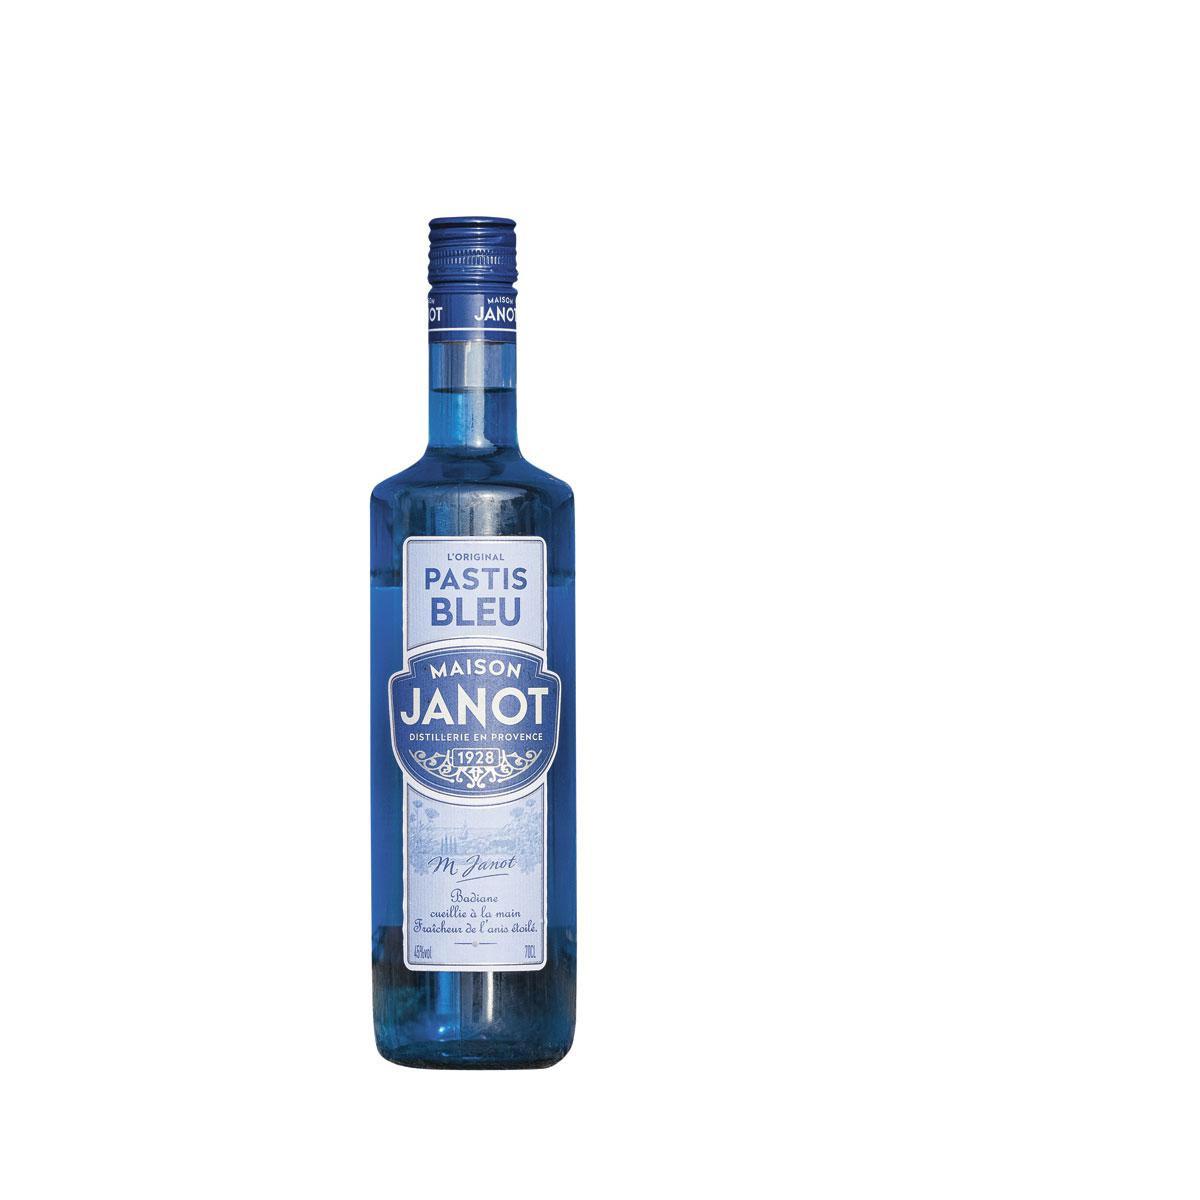 Geen gele, maar Pastis Bleu van Maison Janot, 15,25 euro voor 70 cl.